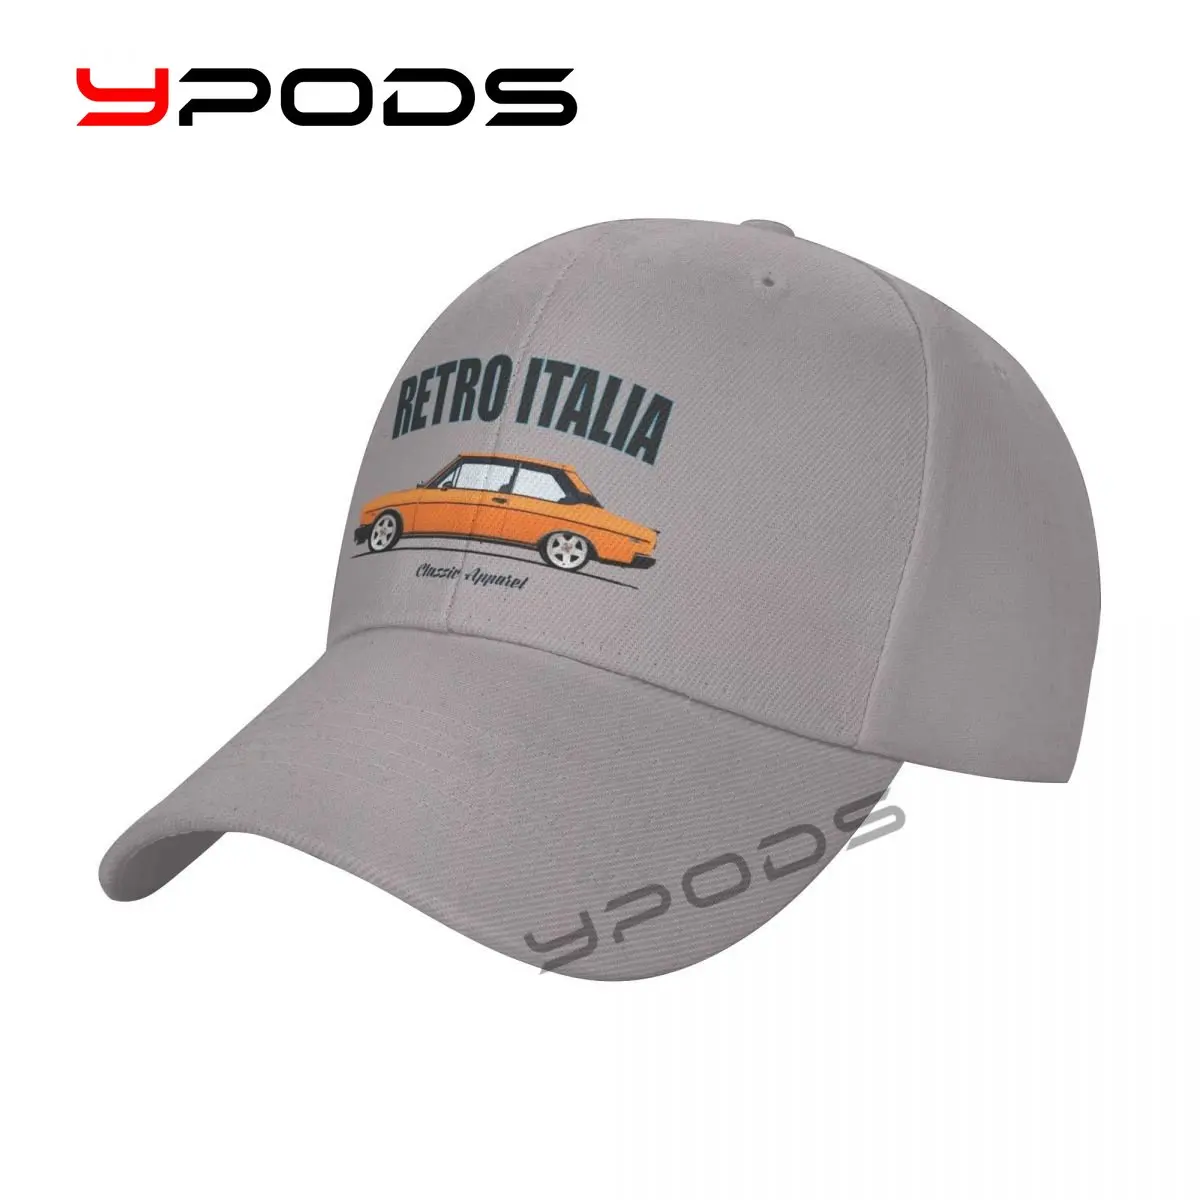 

Men's Baseball Caps FIAT 131 SPORT (RACING) _YT. RETRO ITALIA_YT. CLASSIC CAR Summer Snapback Cap Adjustable Outdoor Sport Hat